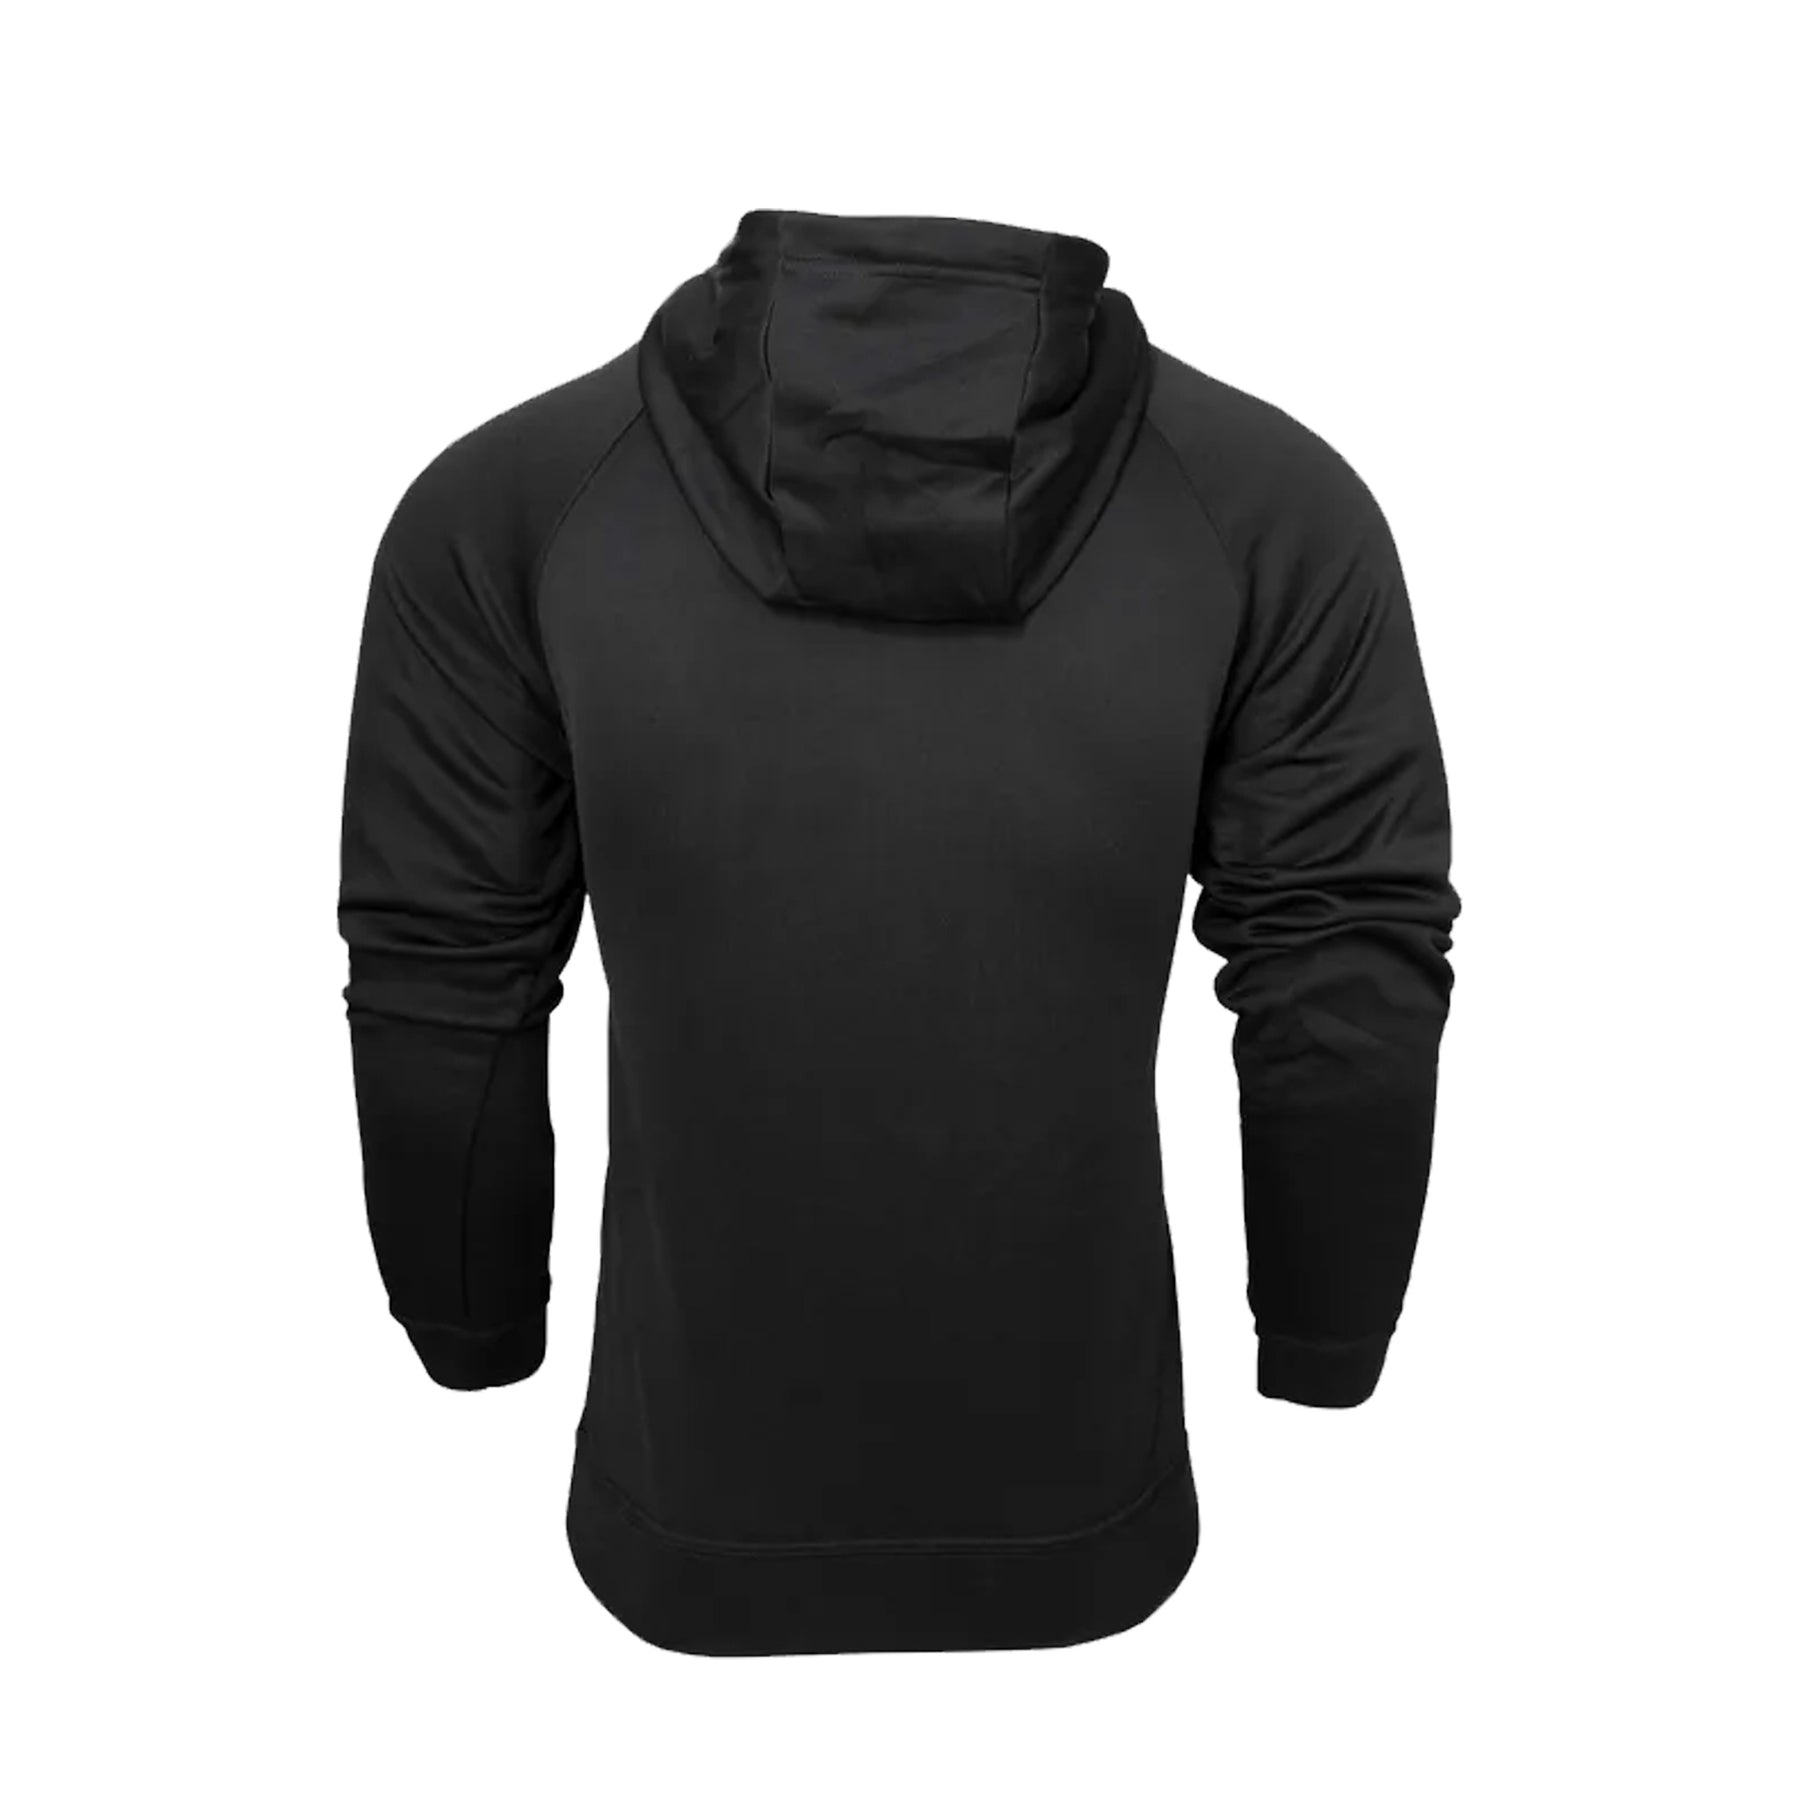 aussie pacific crusader hoodie in black